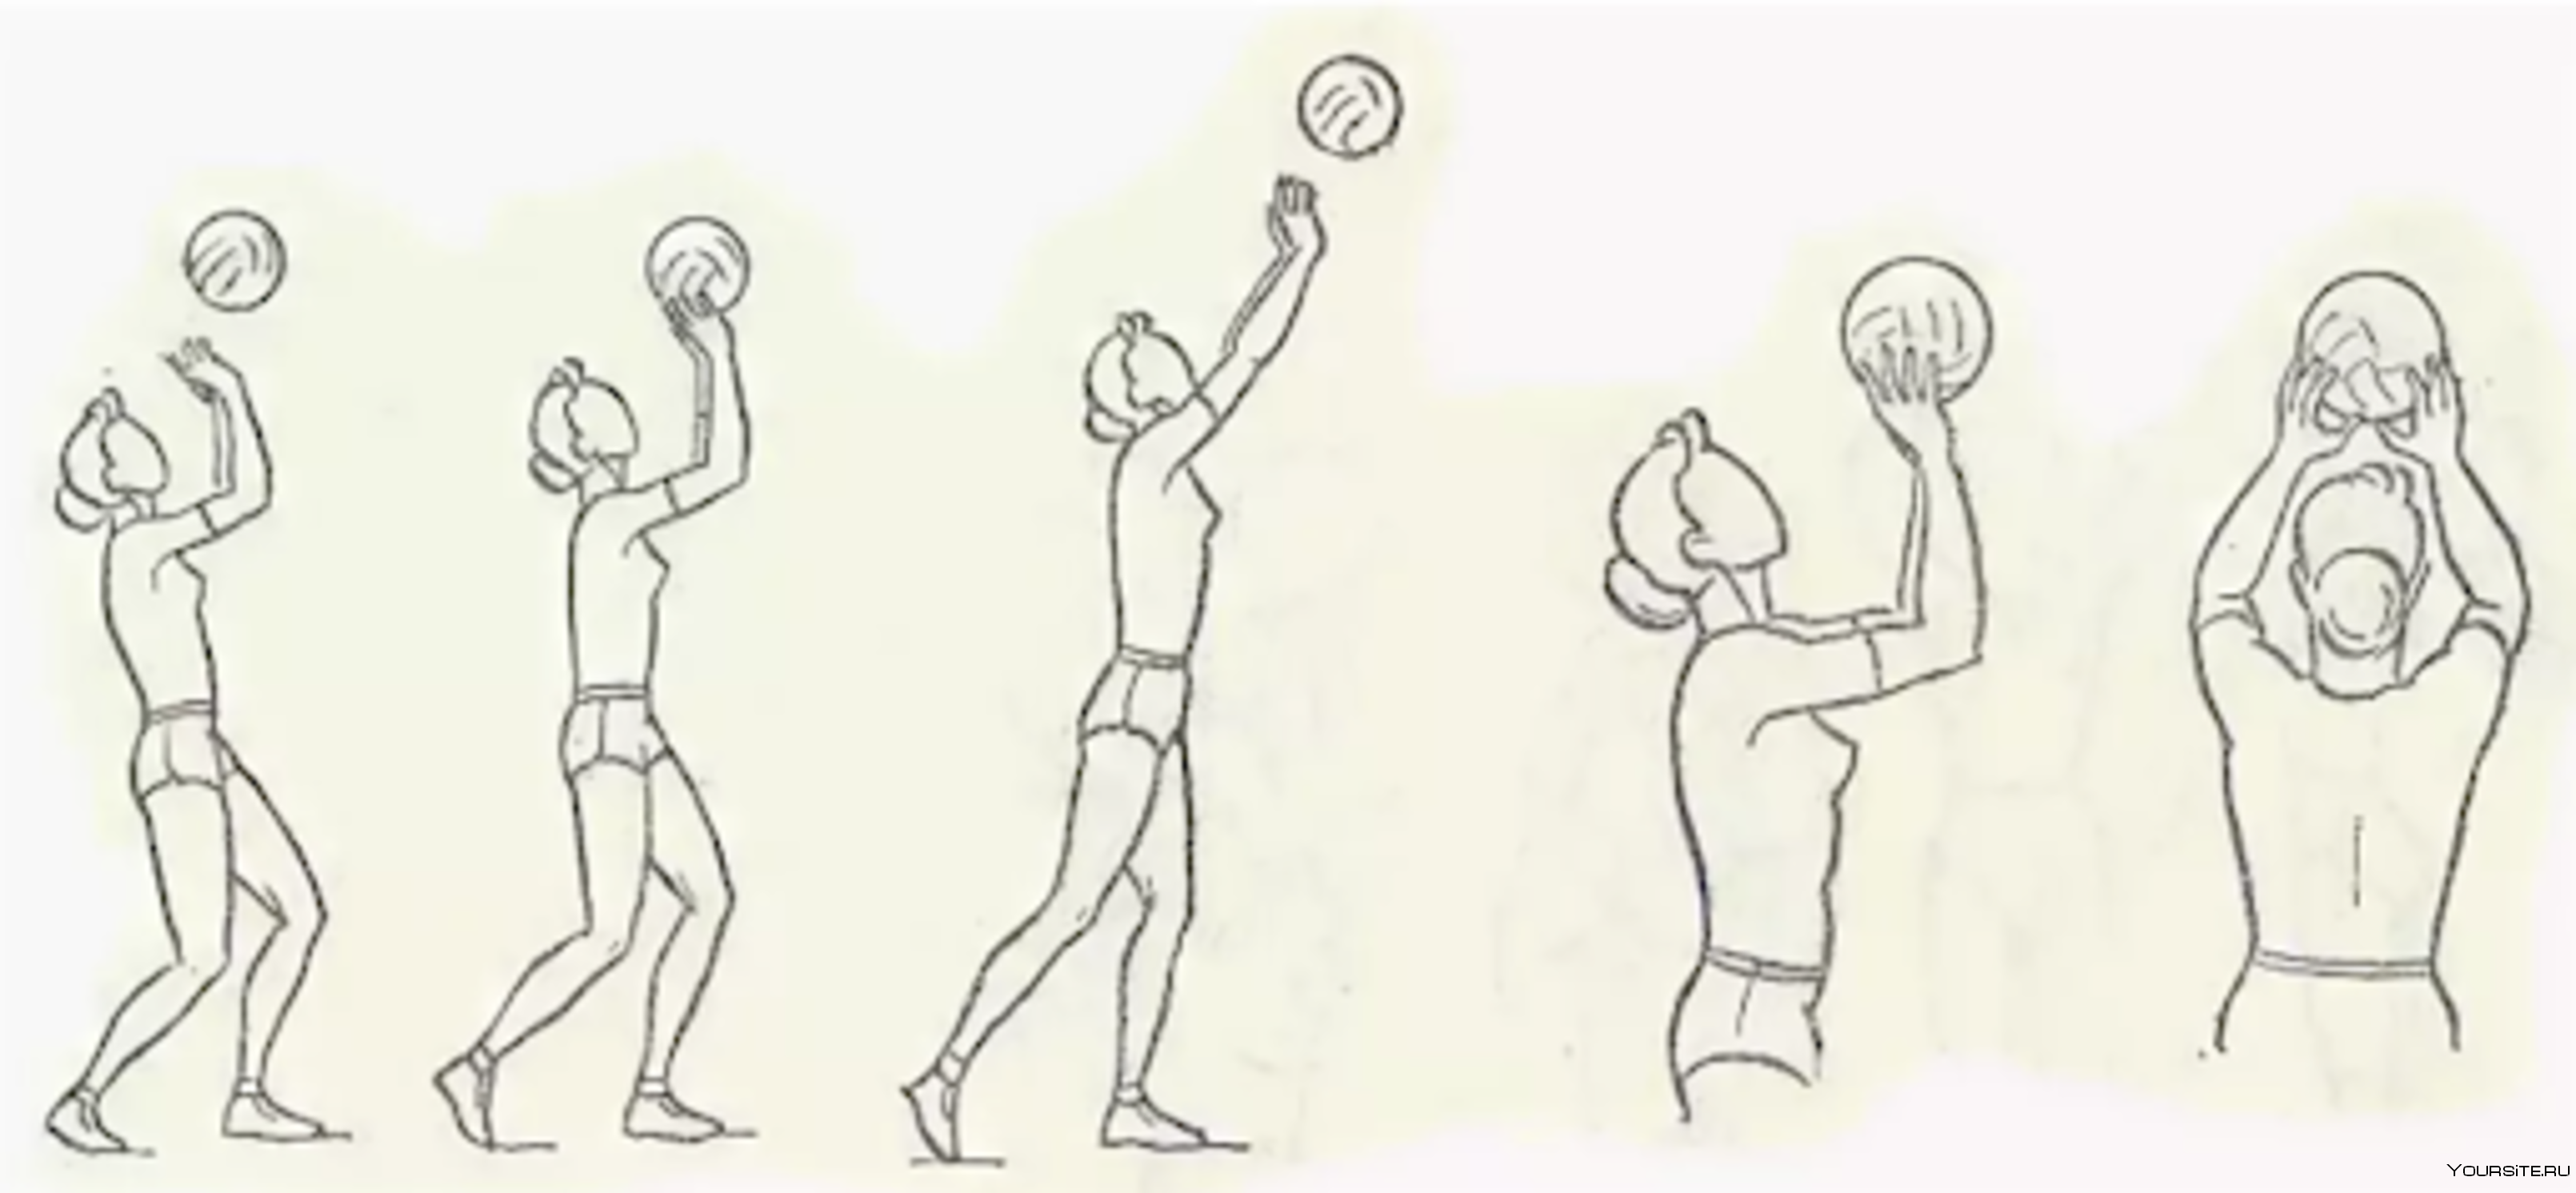 Верхняя передача это технический элемент который. Передача мяча 2 руками сверху в волейболе. Техника передачи мяча двумя руками сверху в волейболе. Техника приема и передачи мяча сверху двумя руками в волейболе. Передача двумя руками сверху в волейболе.